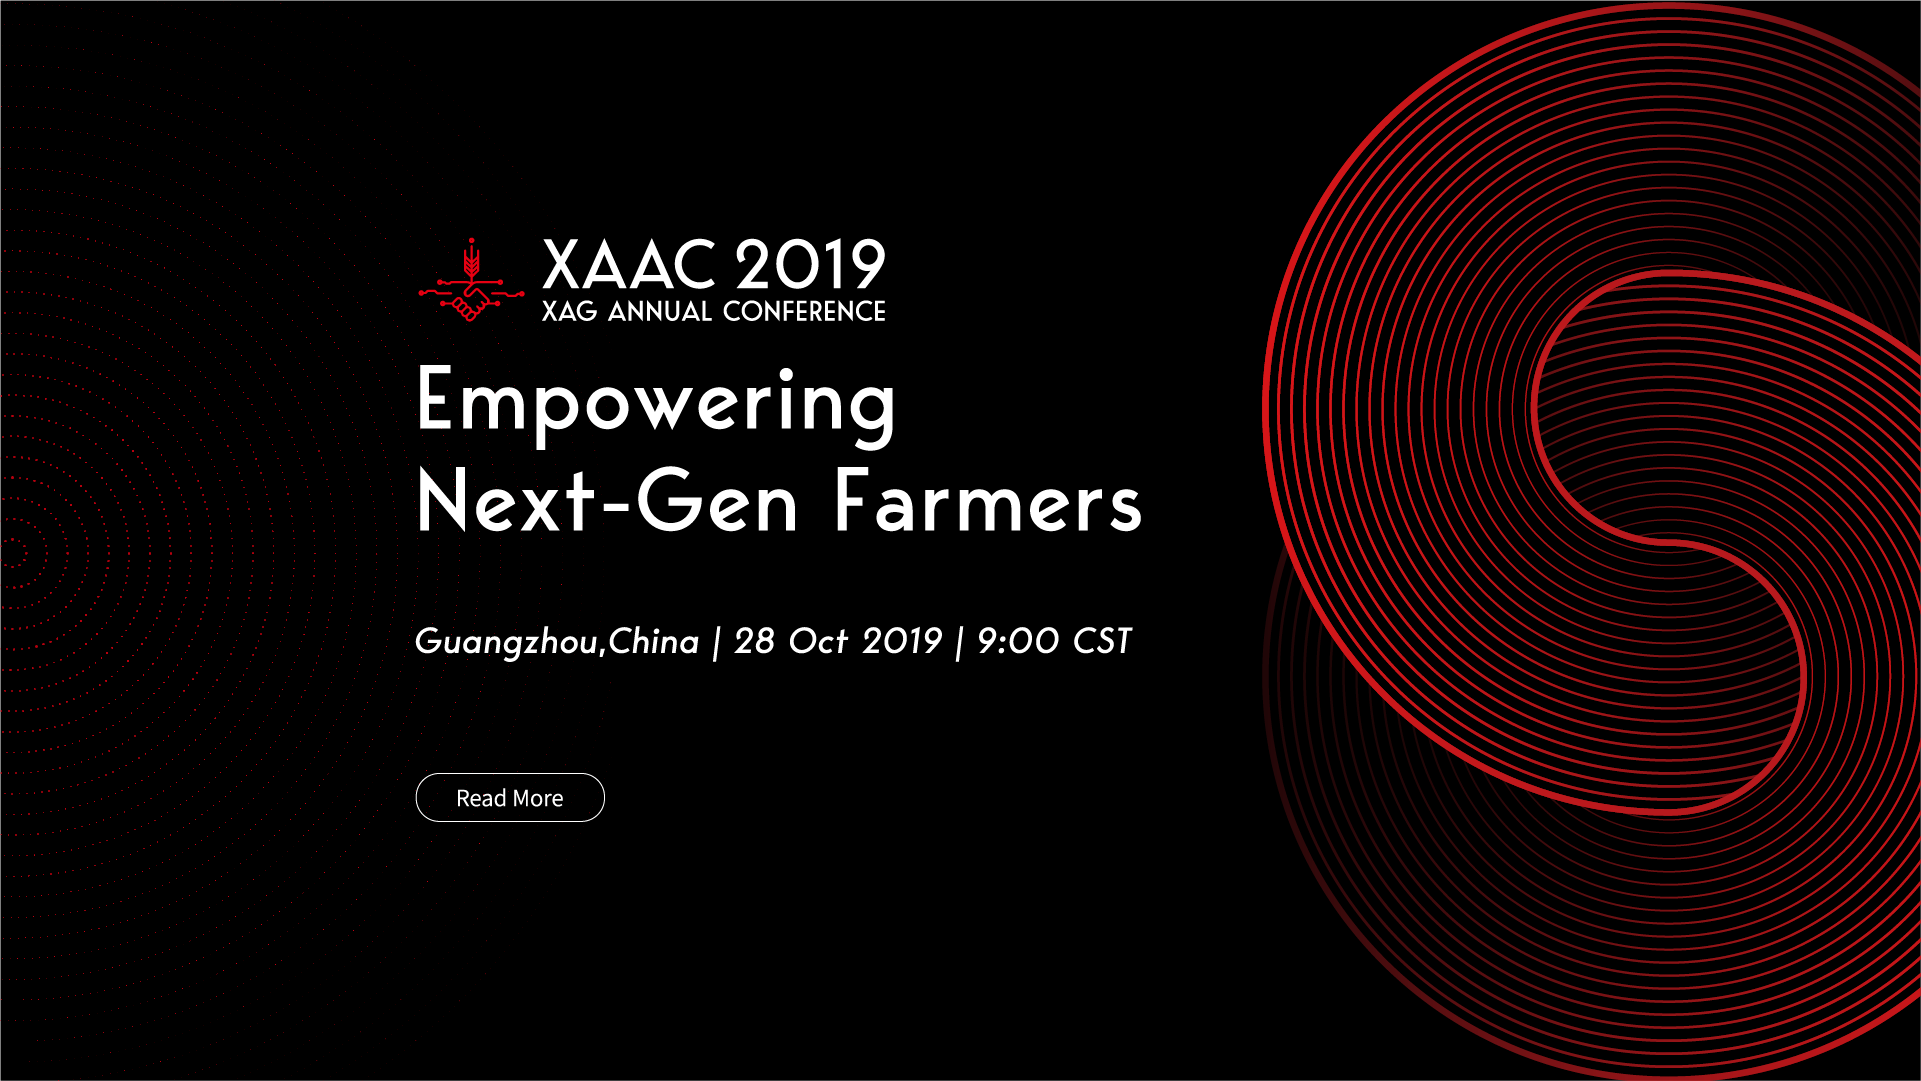 XAAC 2019: Empowering Next-Gen Farmers